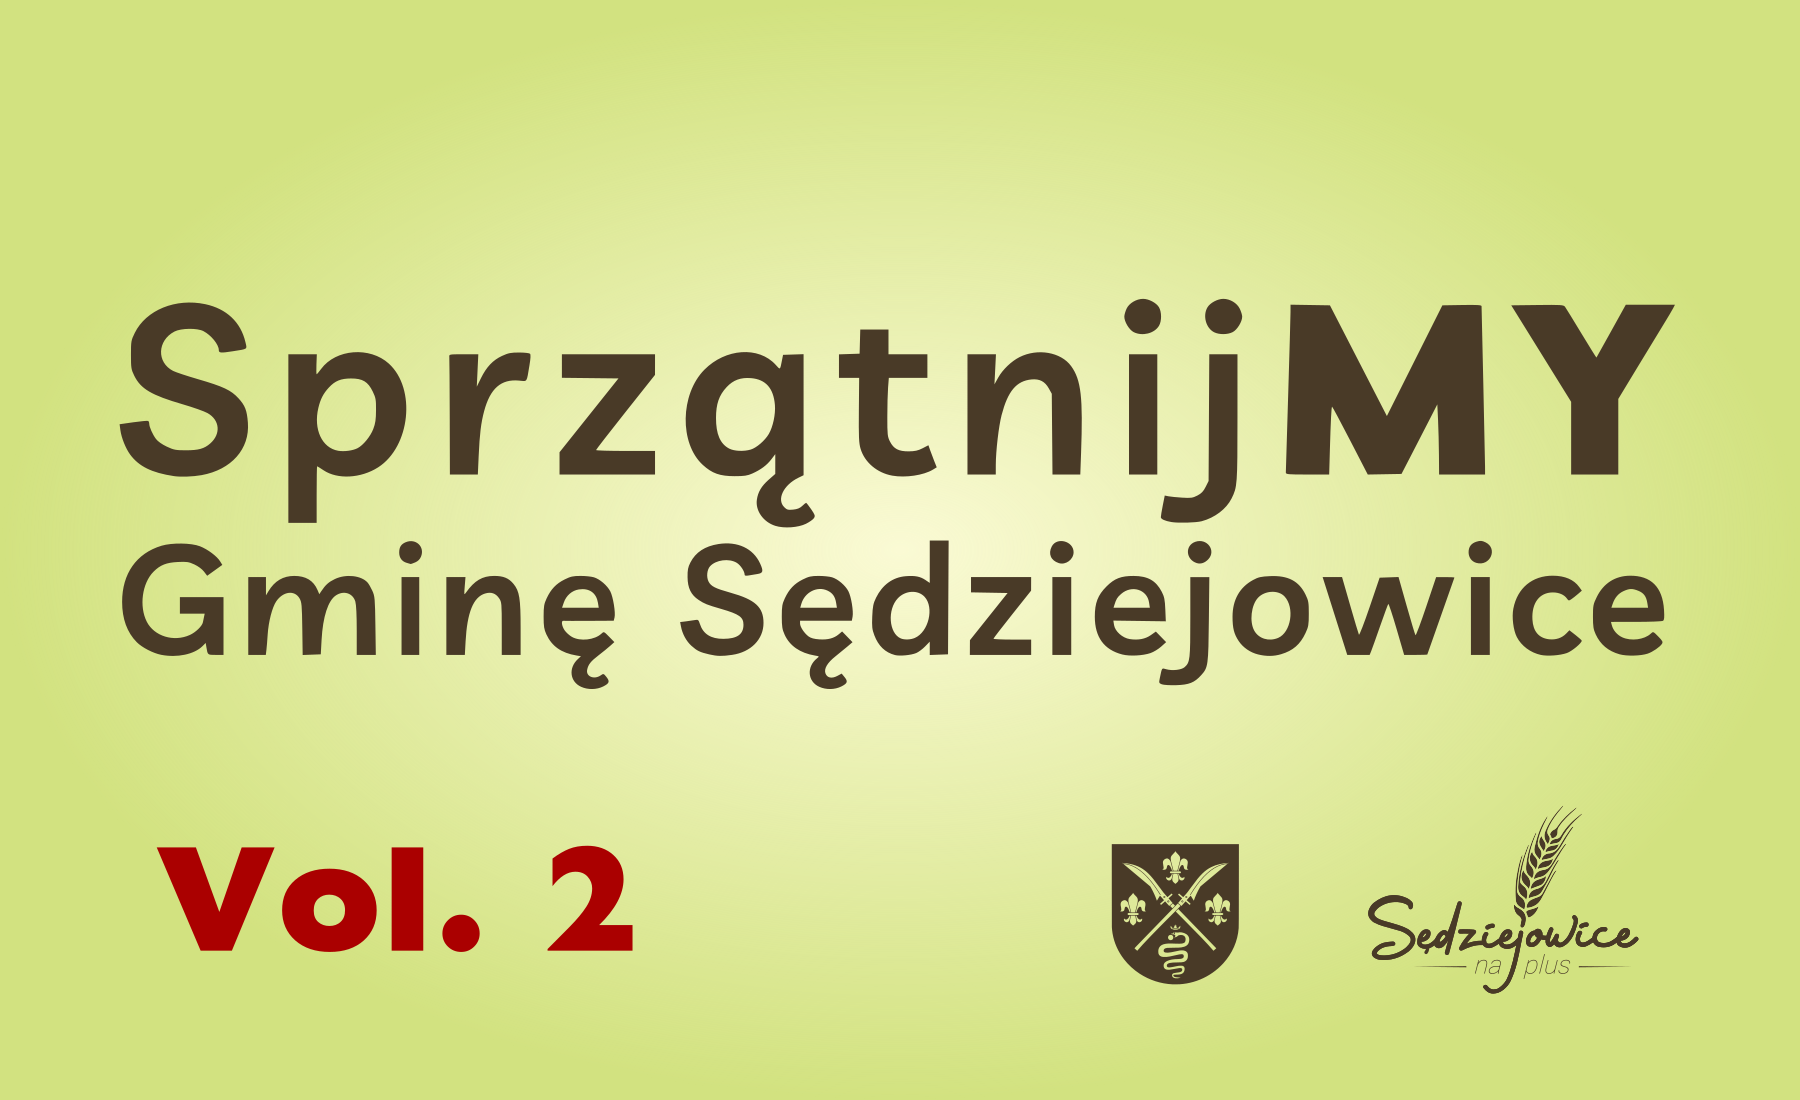 Grafika z hasłem "Sprzątnijmy Gminę Sędziejowice".